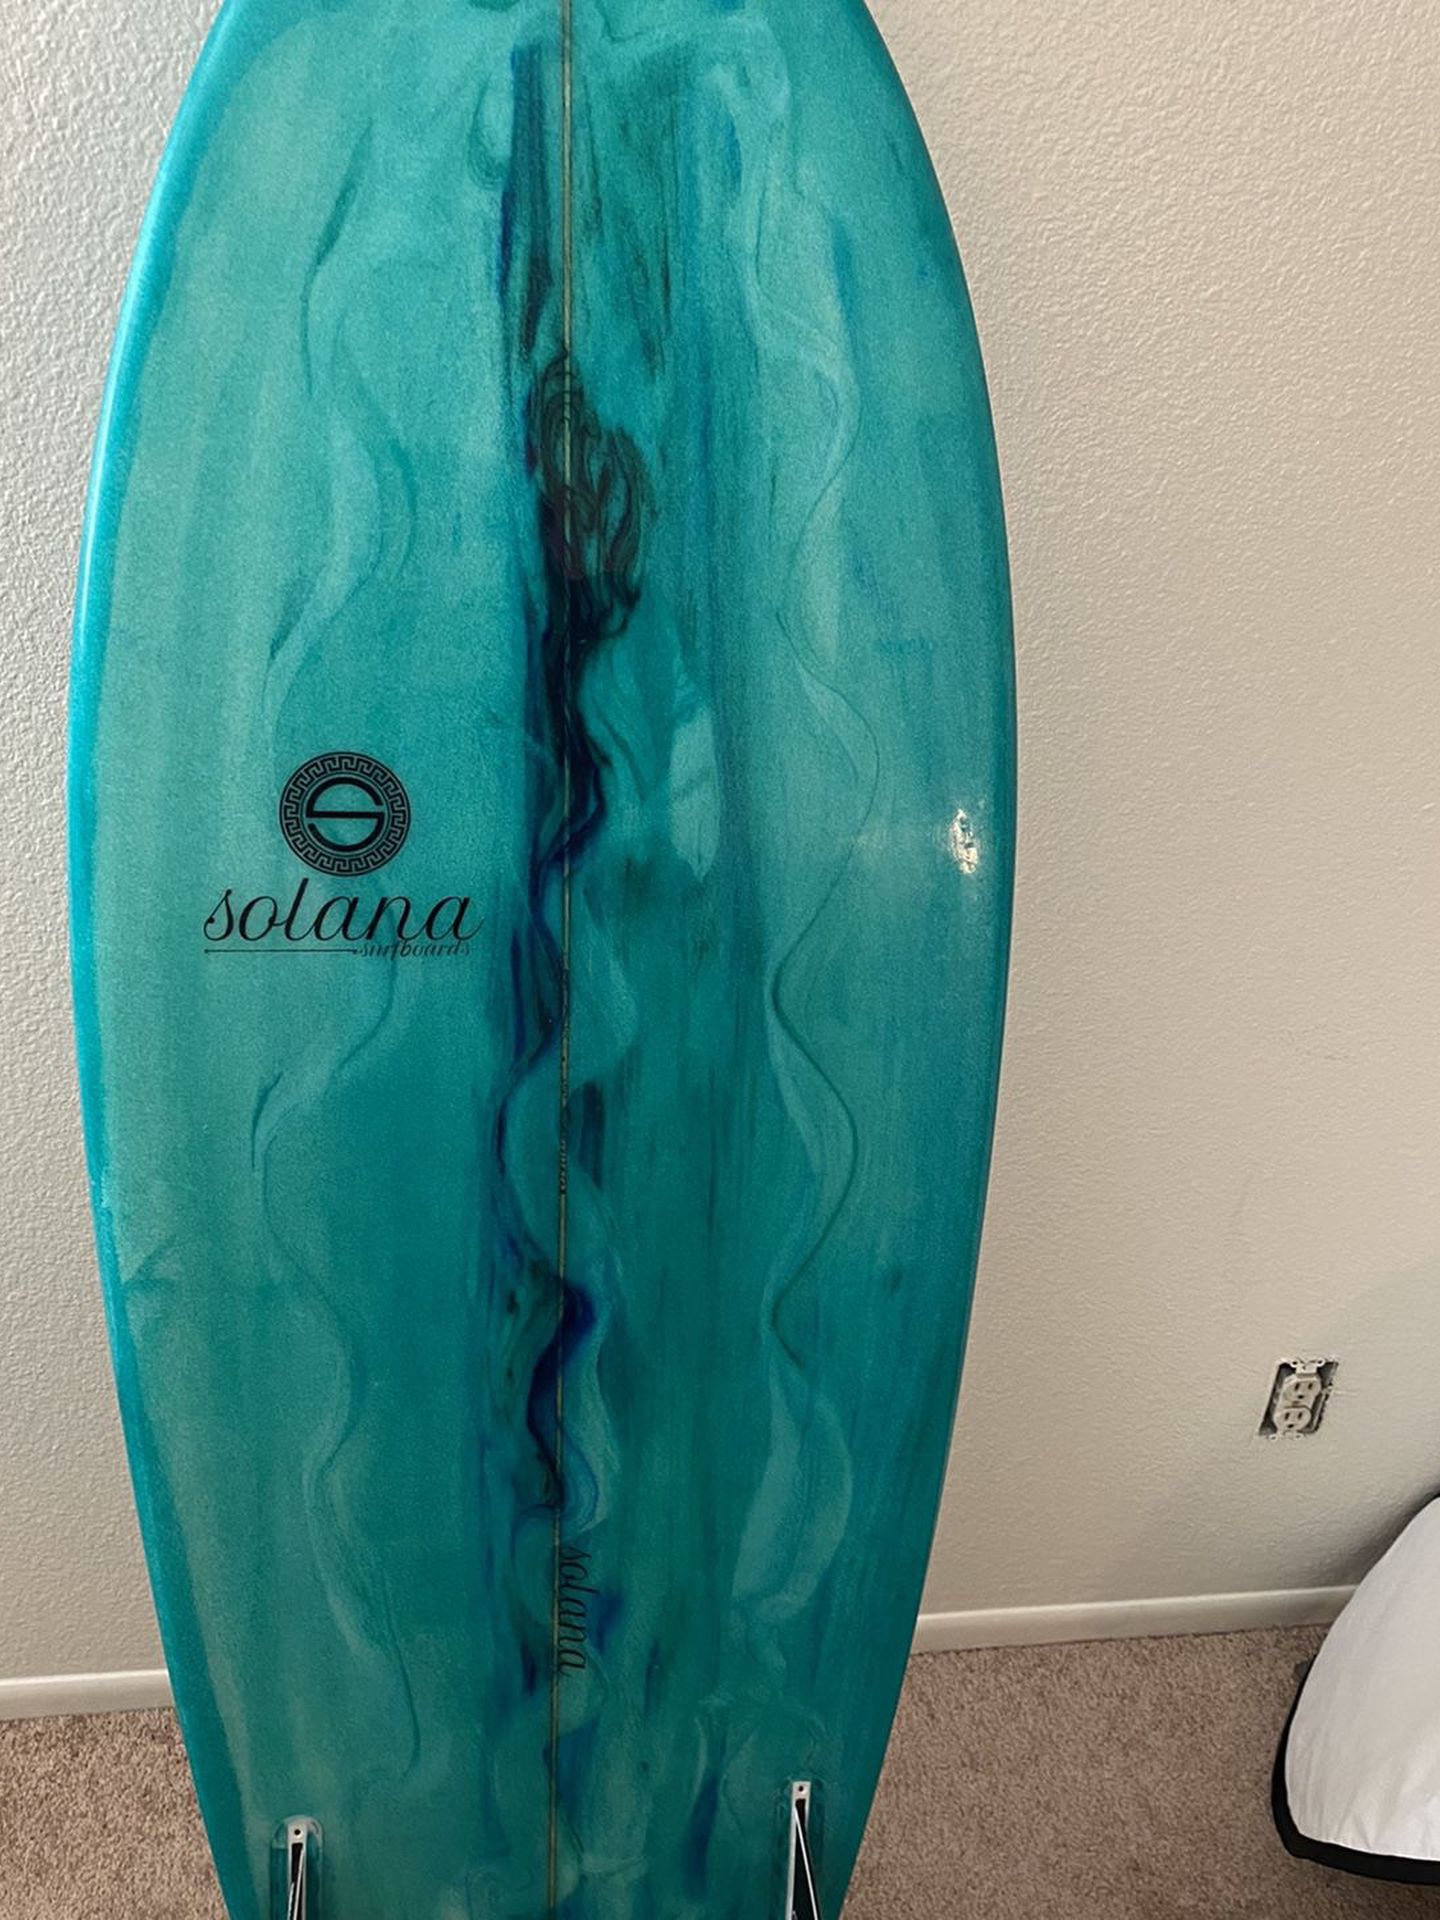 Solana Fish Surfboard 5’6” X 21 X 2 1/2 34L